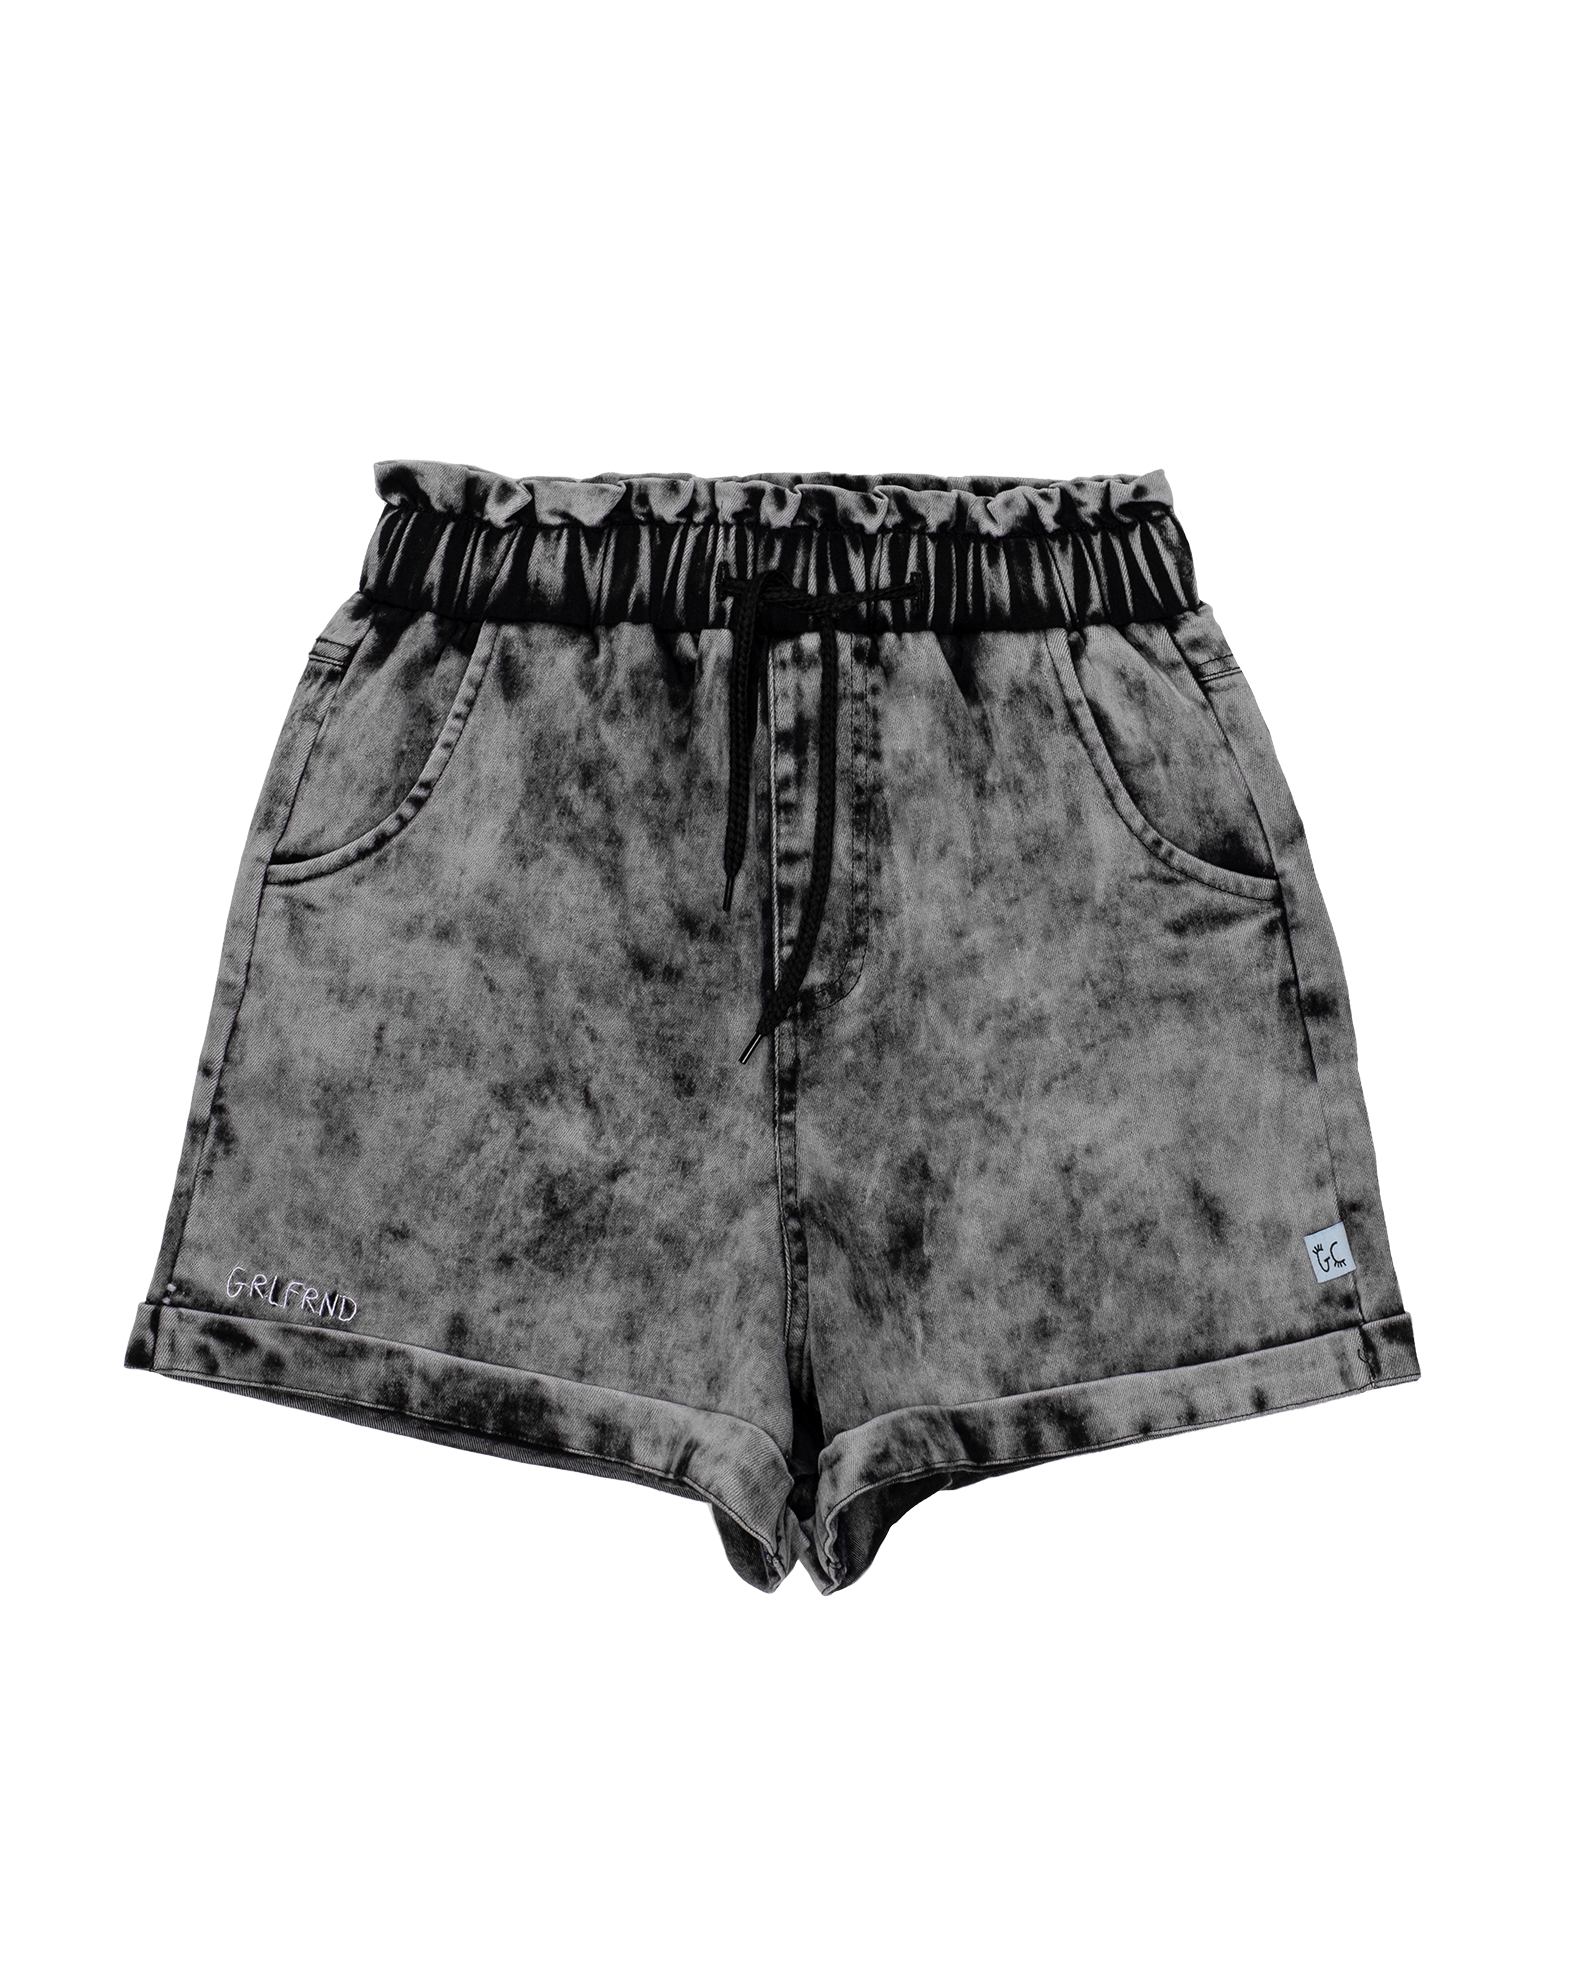 Buy Online Light Wash Denim Shorts for Men online at Zobello